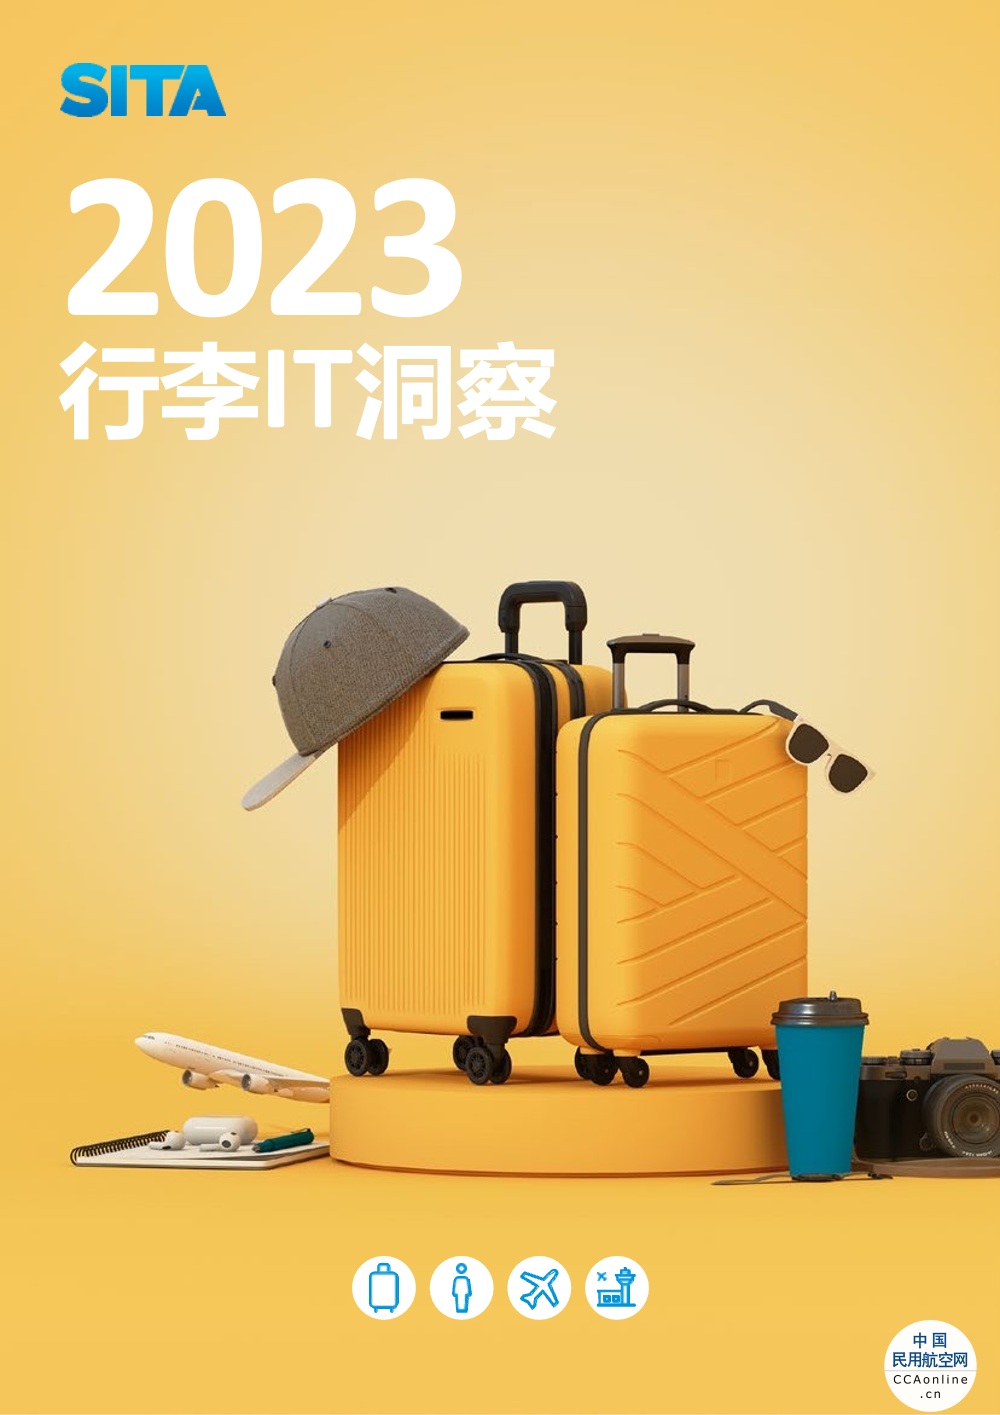 SITA：2022年错运行李率几乎翻番 航空业寻求数字化解决方案